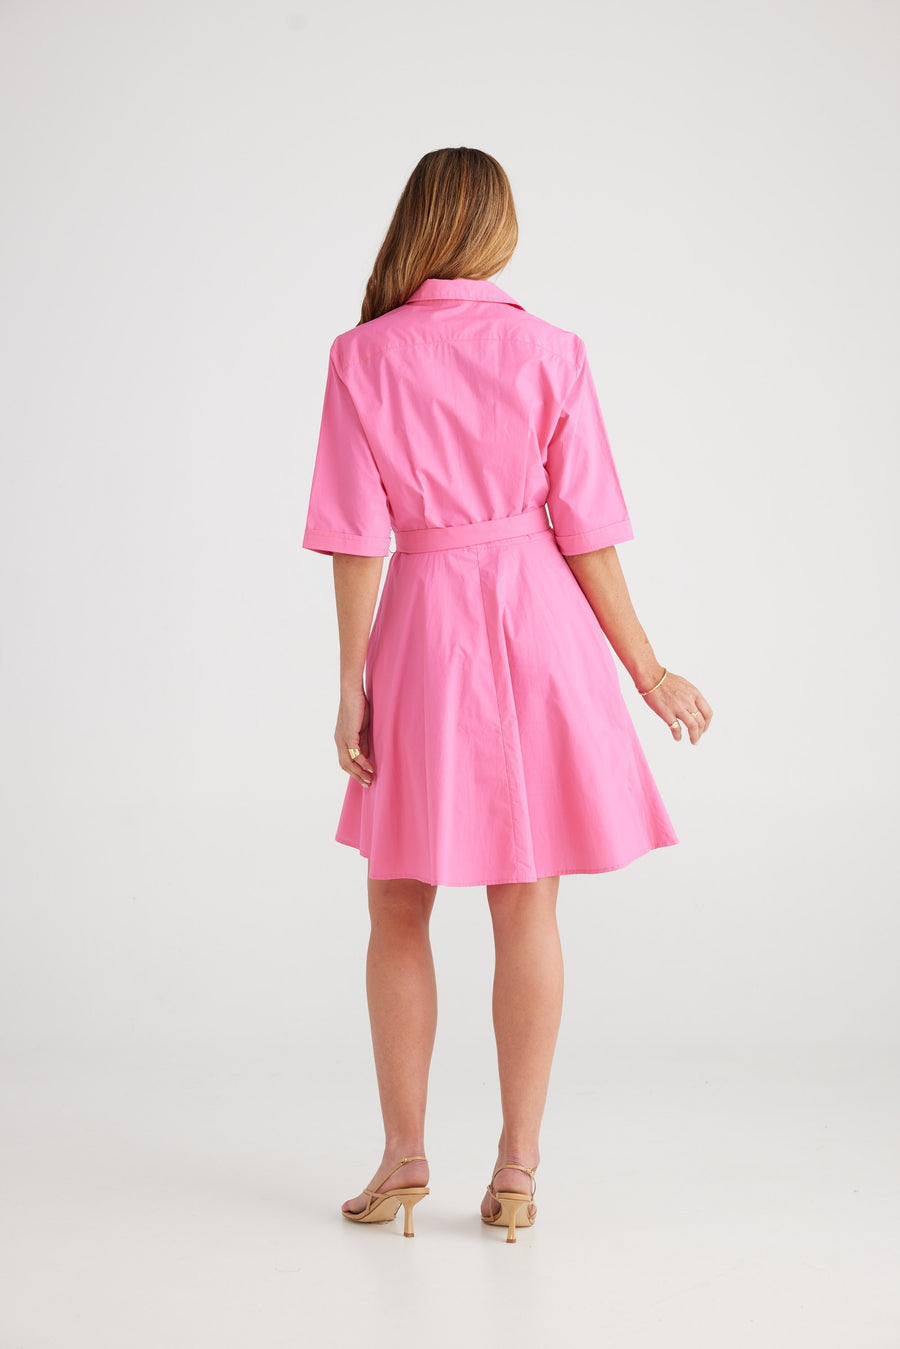 Raffa Dress - Hot Pink